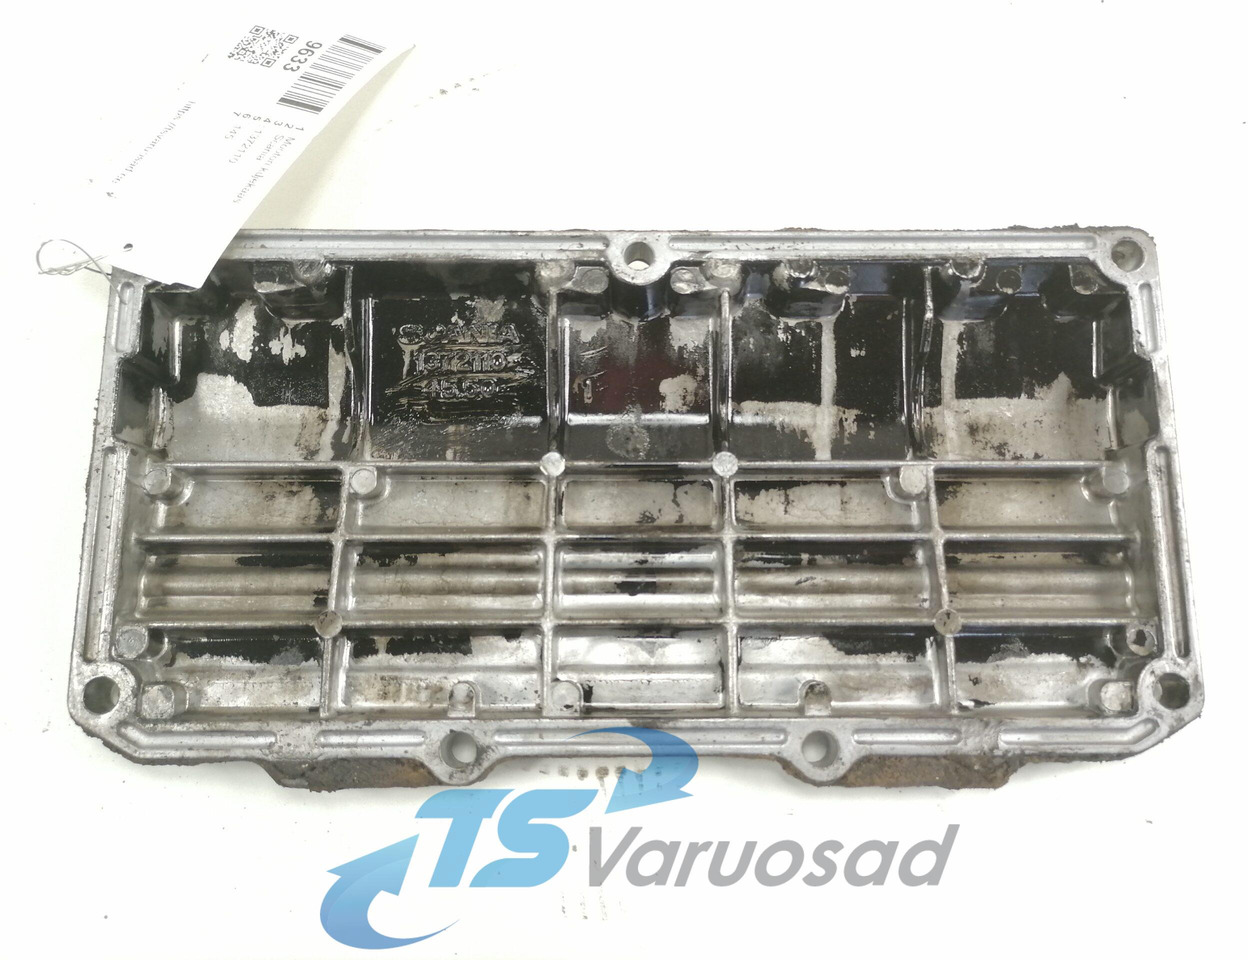 Motor og reservedele for Lastbil Scania engine side cover 1372110: billede 2